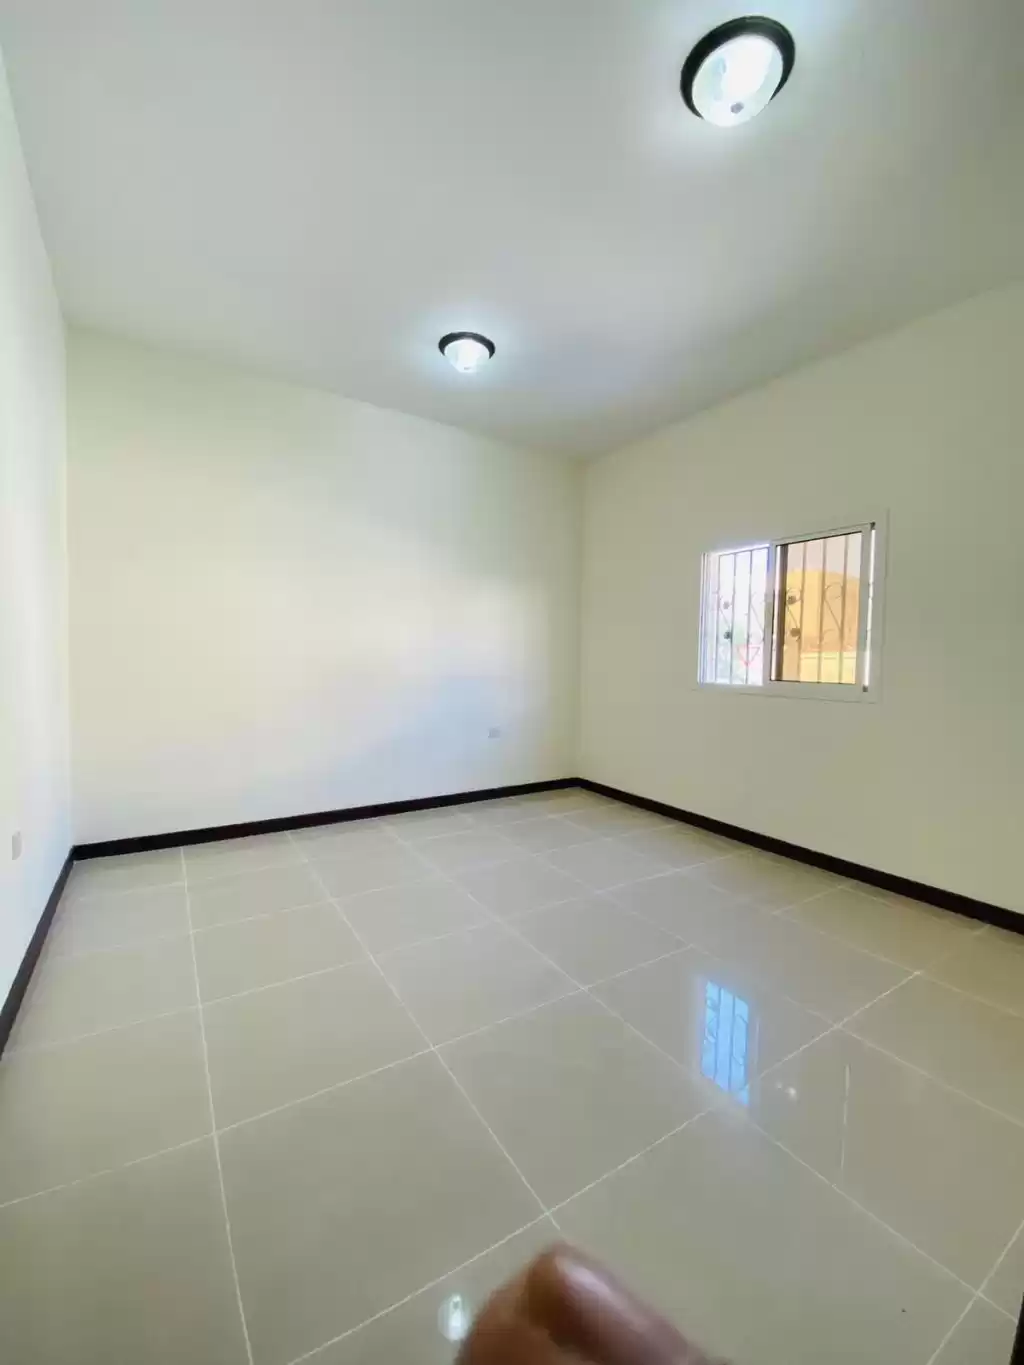 Résidentiel Propriété prête 2 chambres U / f Appartement  a louer au Al-Sadd , Doha #14137 - 1  image 